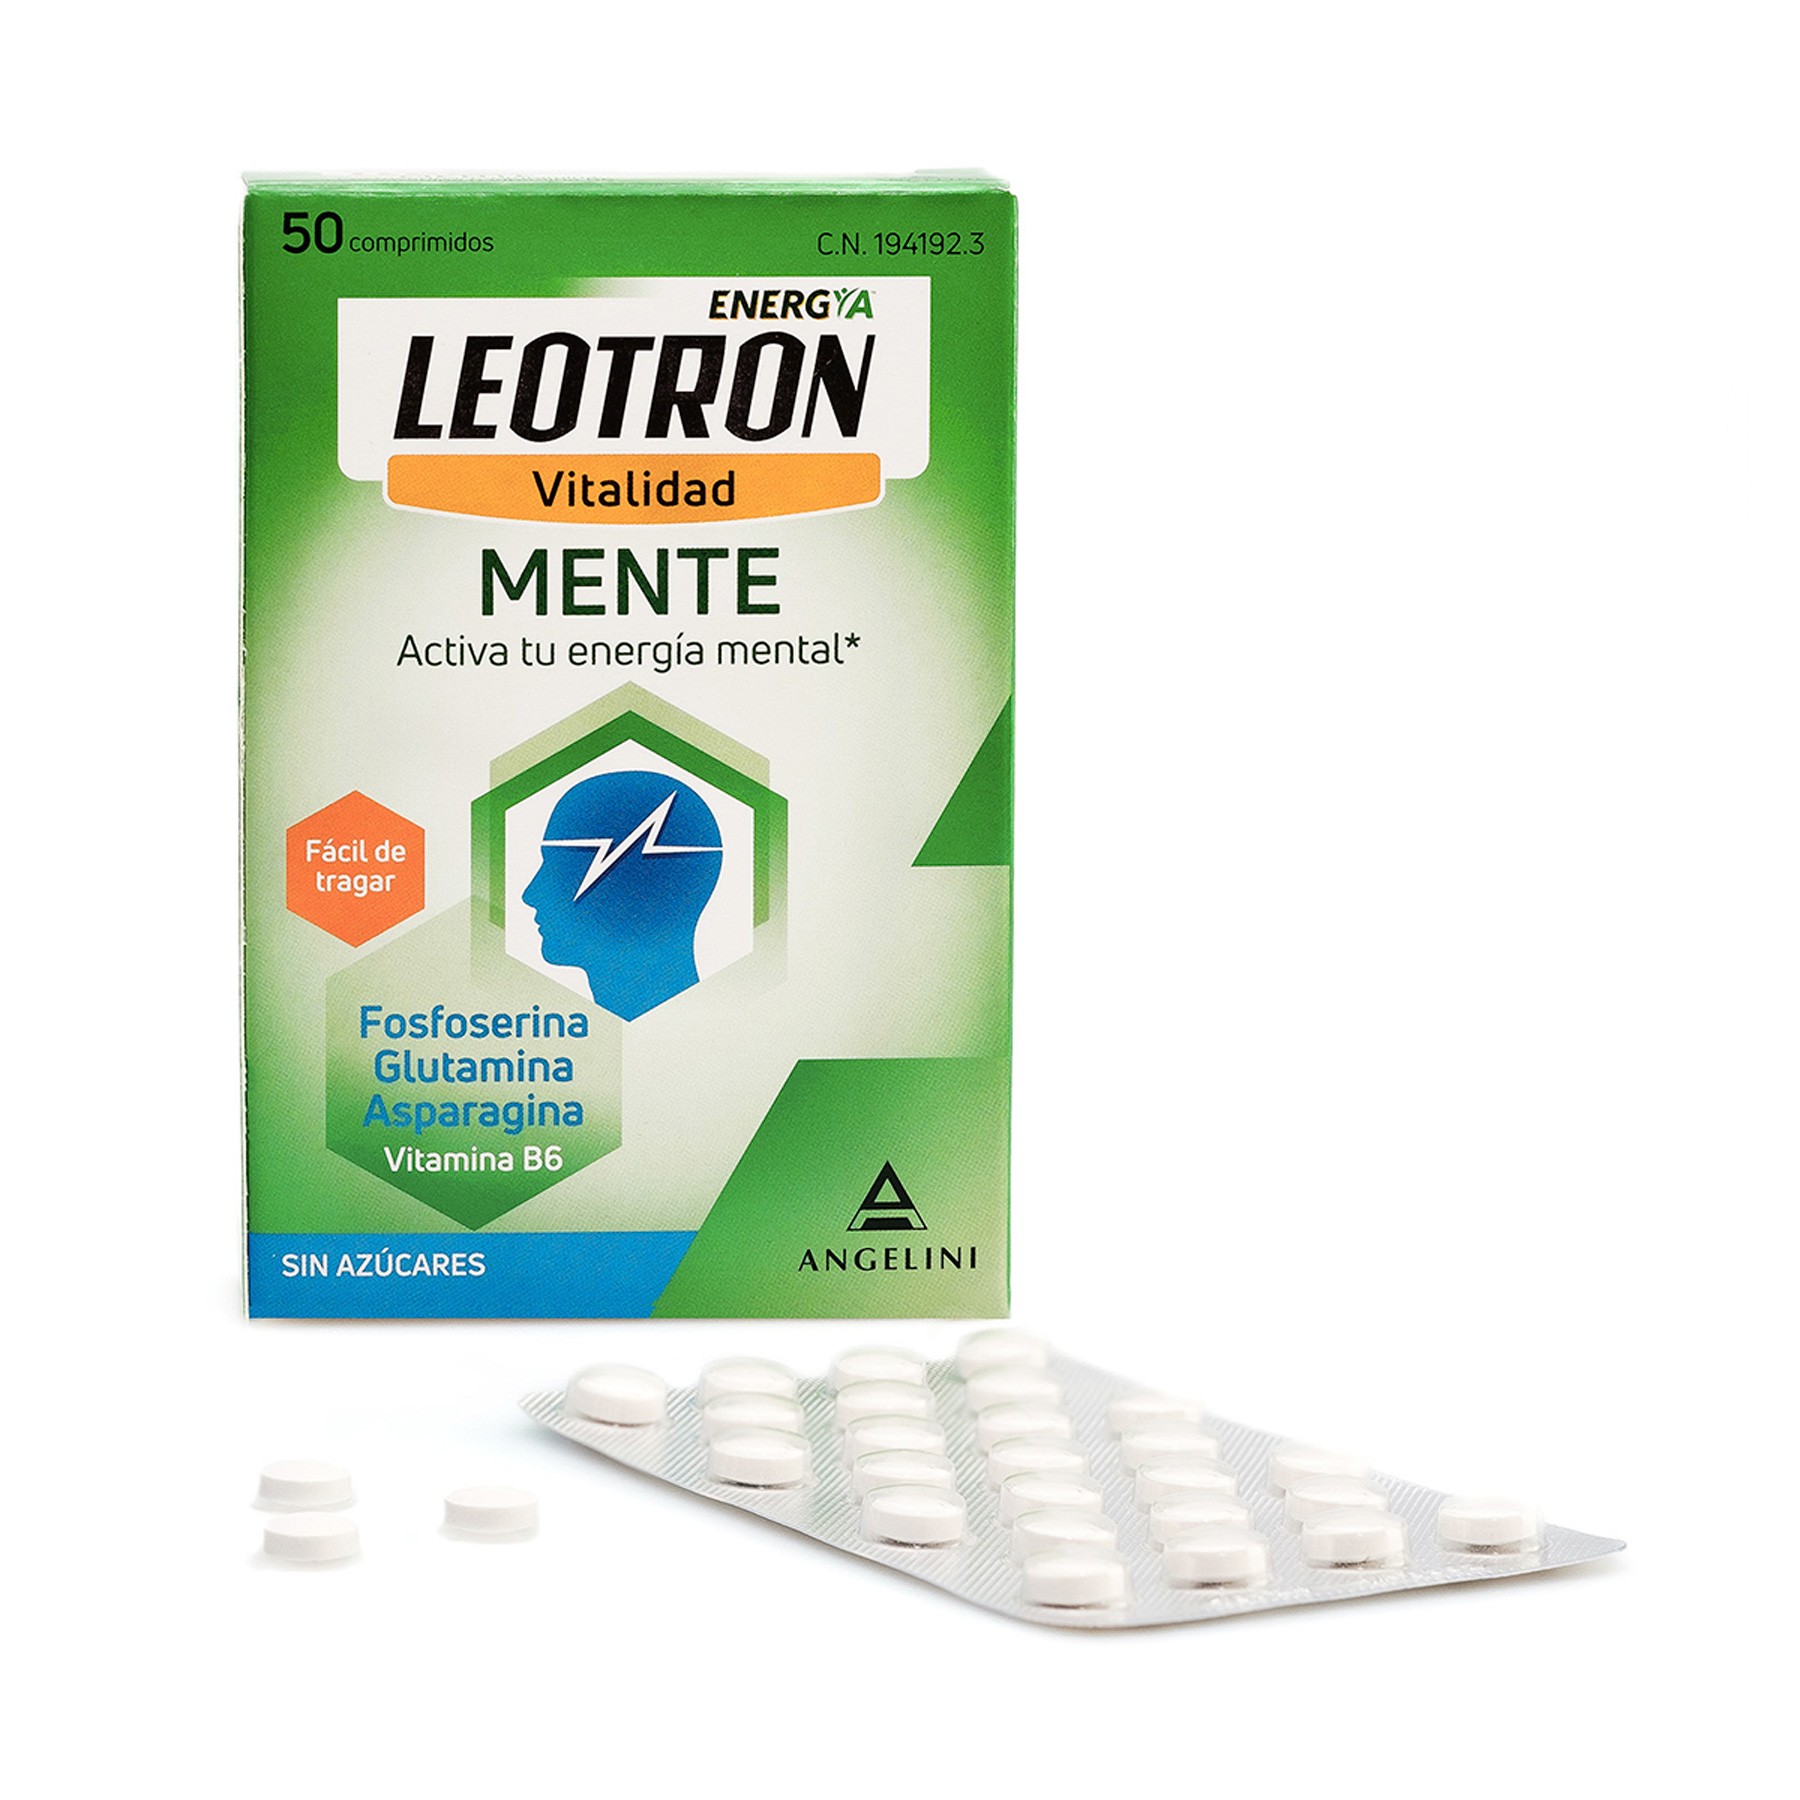 Leotron mente 50 comprimidos